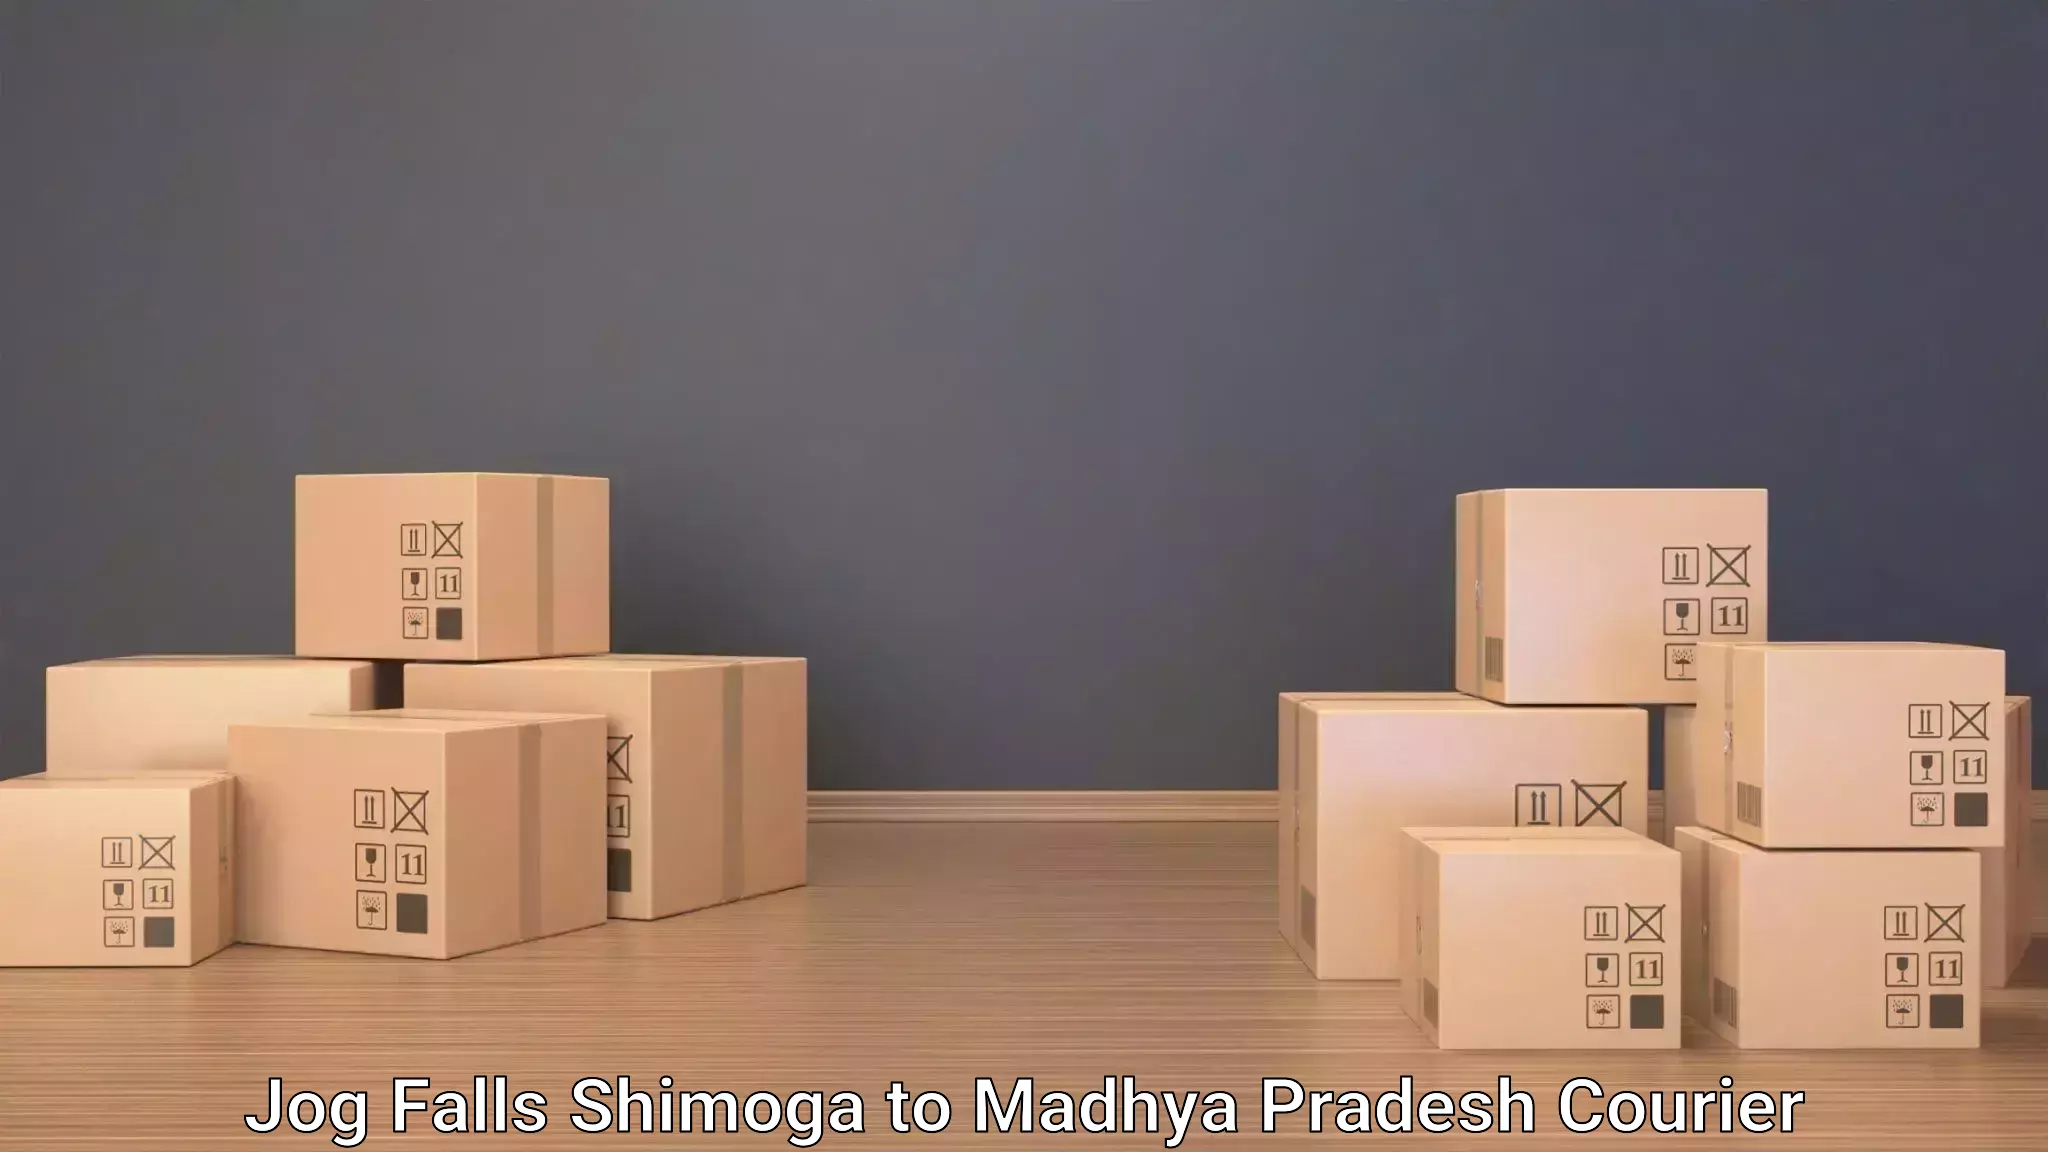 Luggage shipment processing in Jog Falls Shimoga to Madhya Pradesh